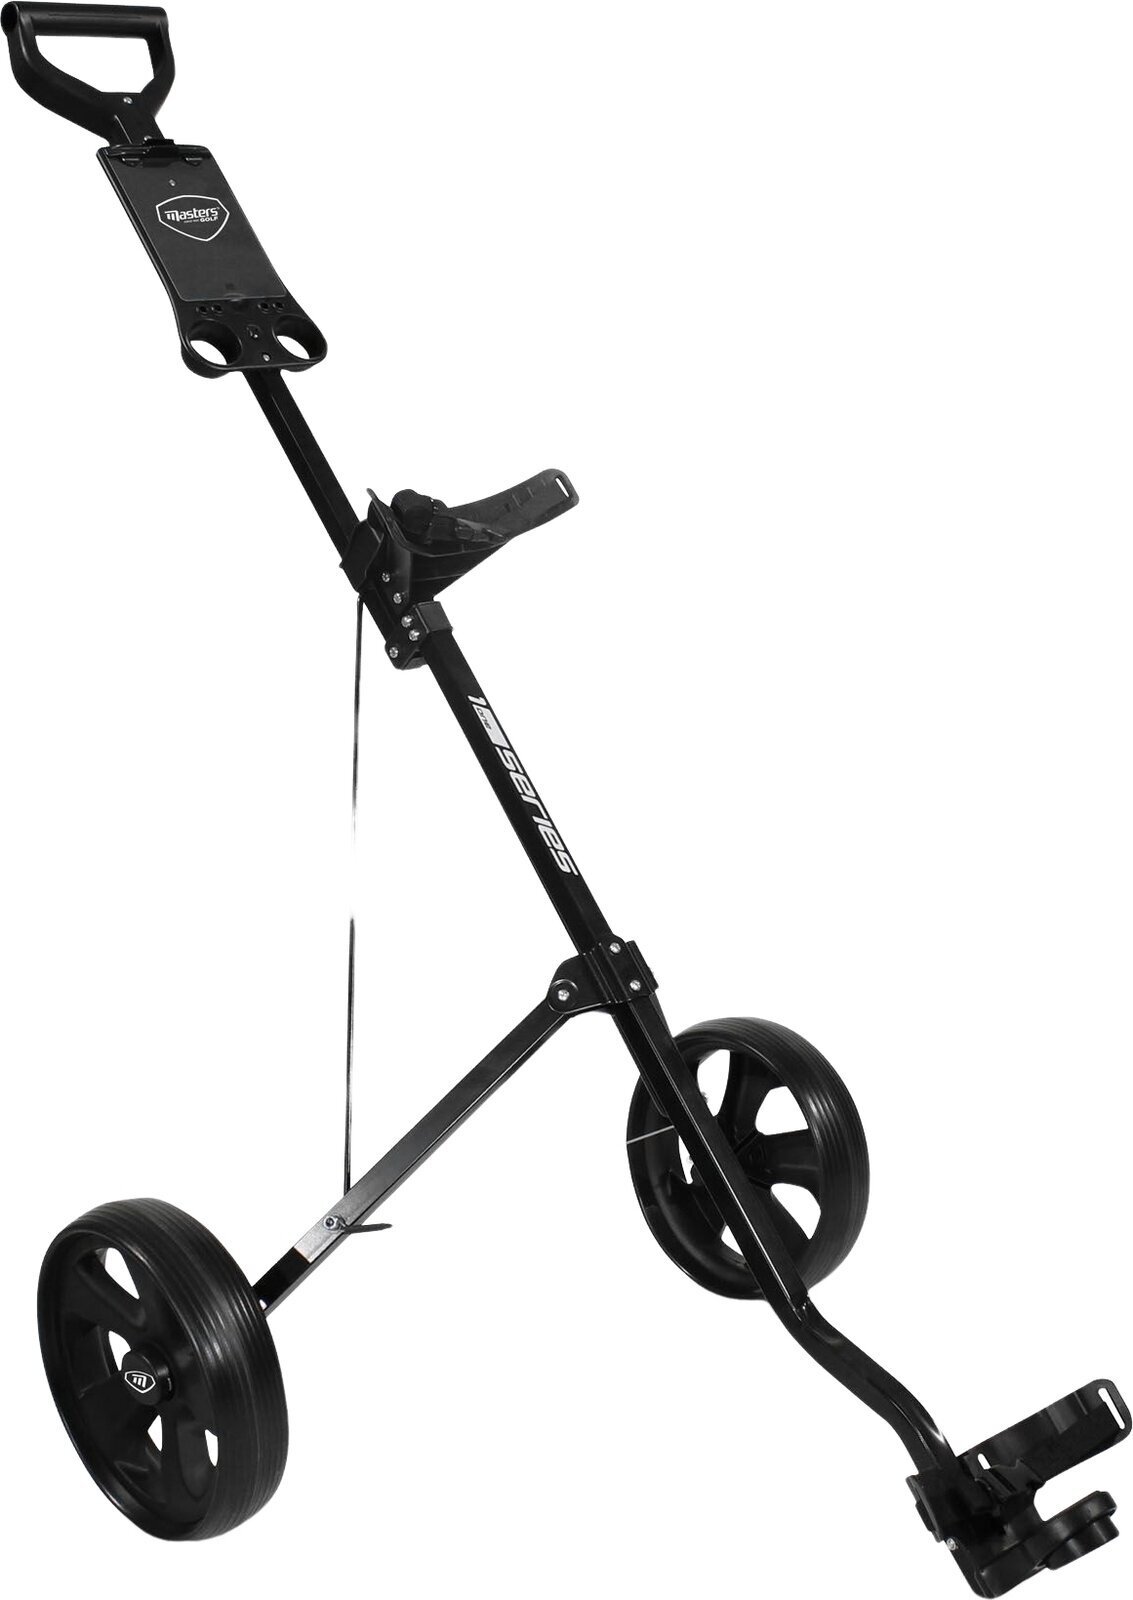 Chariot de golf manuel Masters Golf 1 Series 2 Wheel Pull Trolley Black Chariot de golf manuel